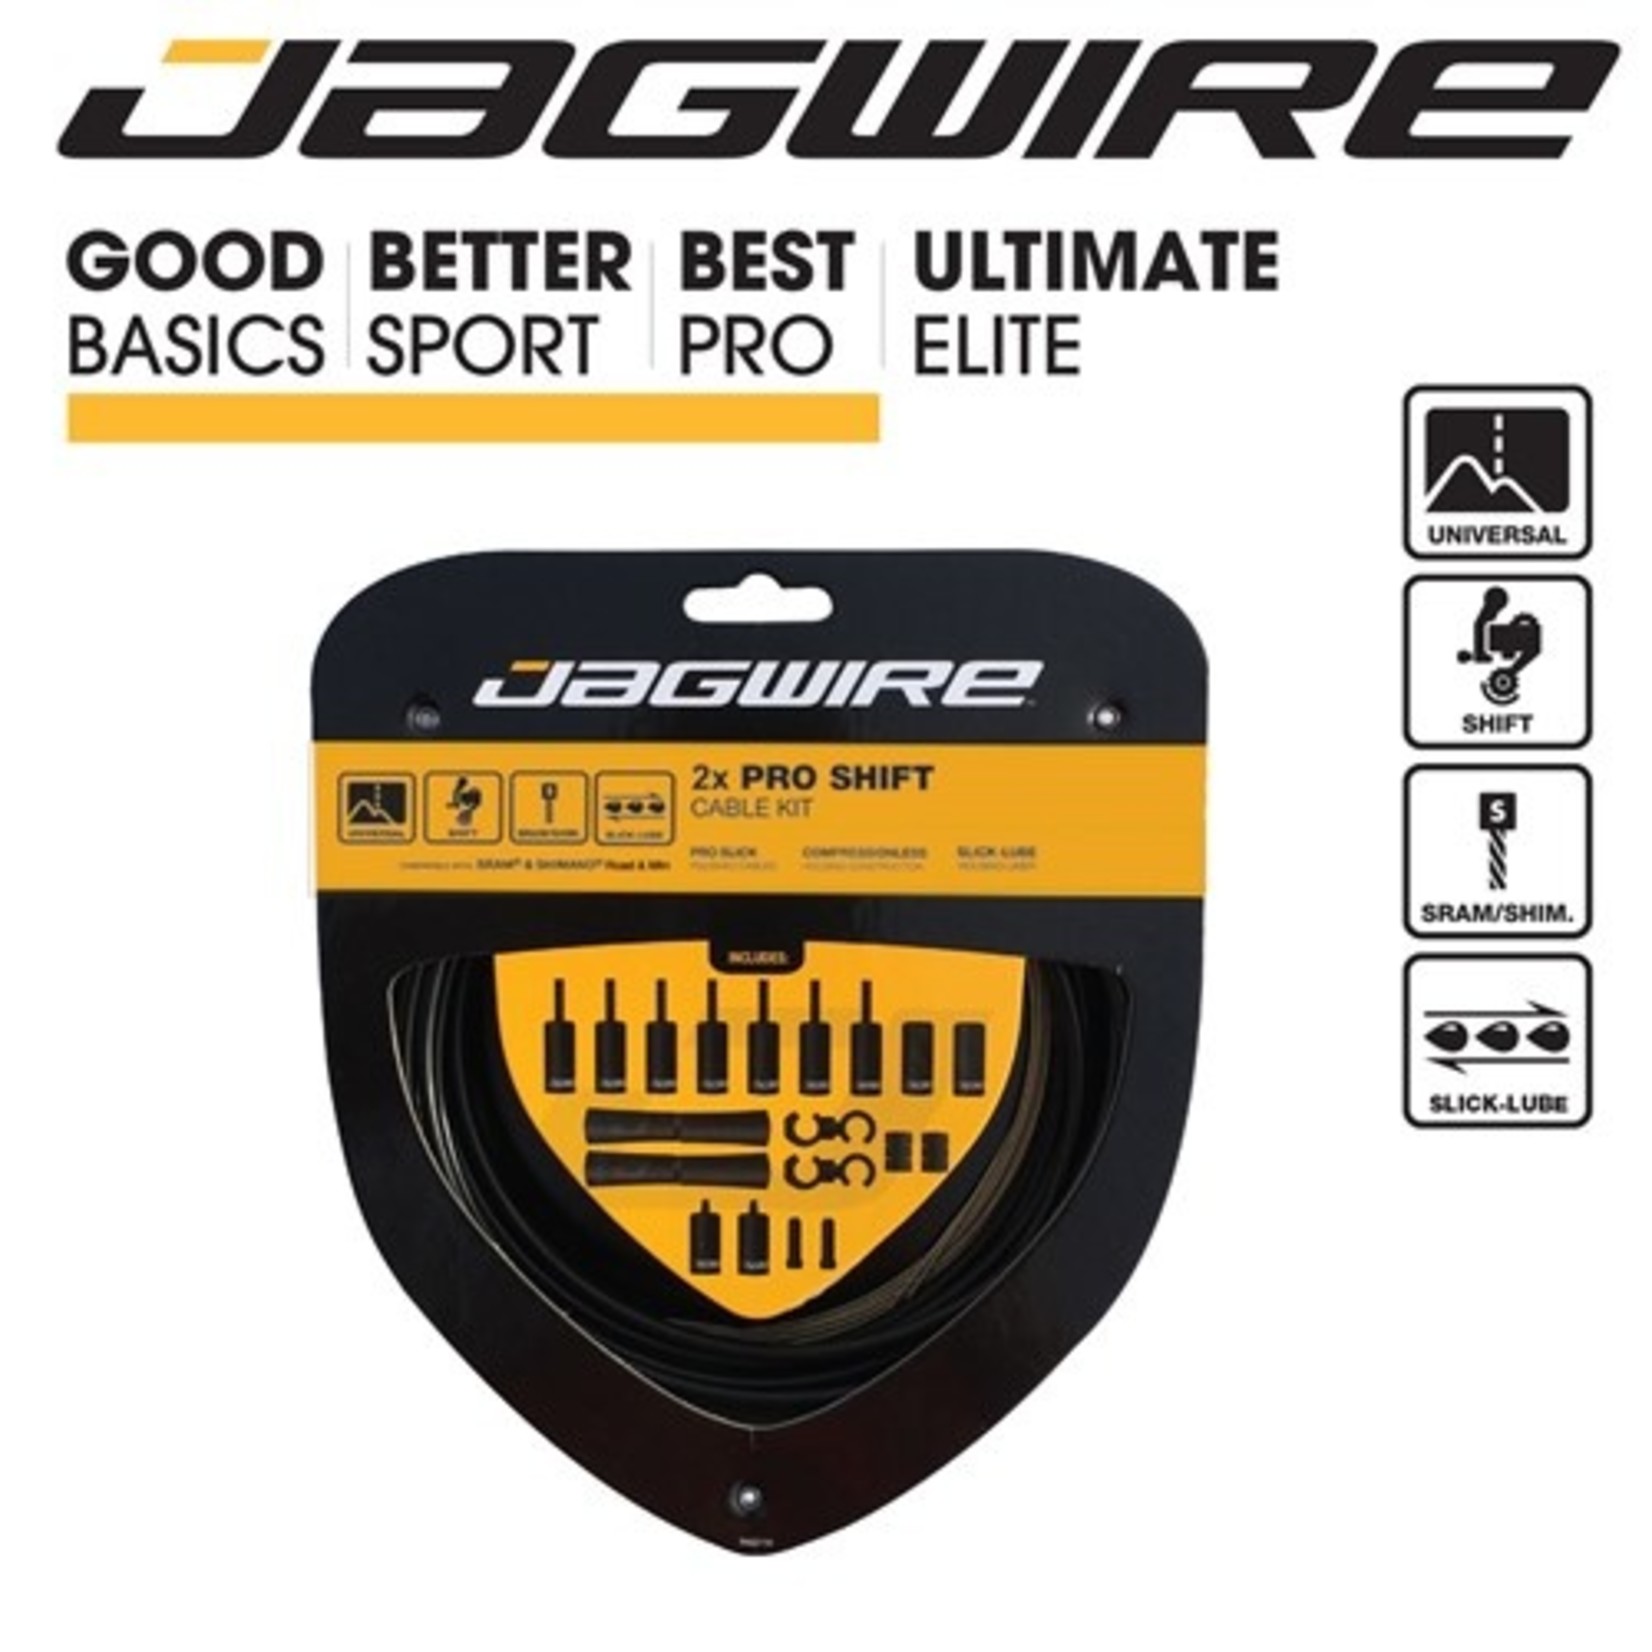 Jagwire Jagwire 2 X Pro Universal Complete Shift Kit - Slick-Lube